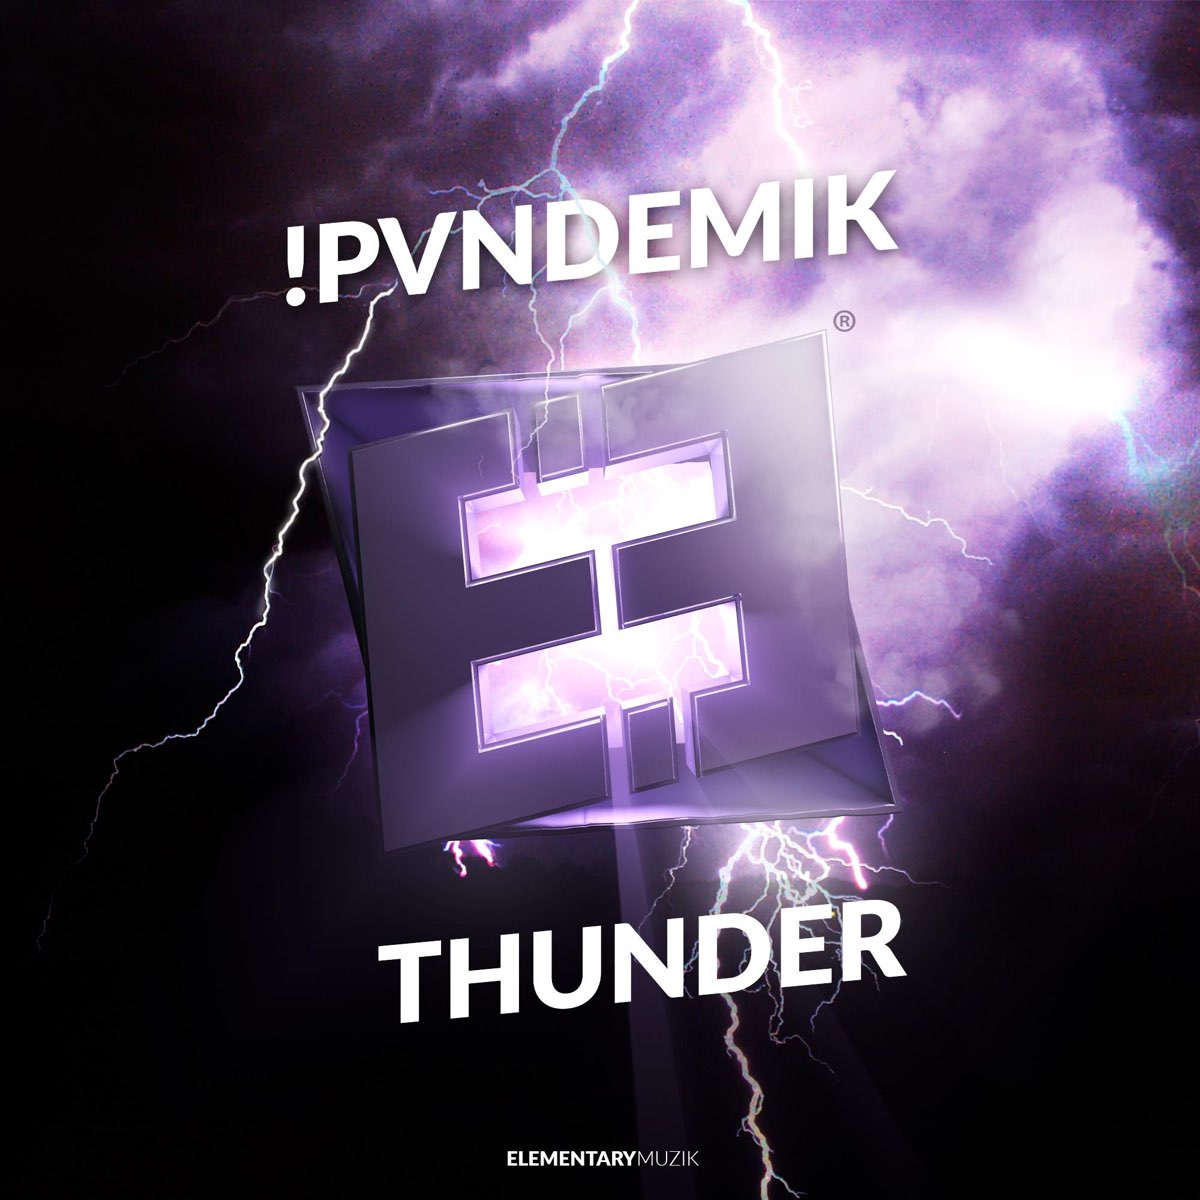 Thunder original. Thunder слова. Thunder Music. Thunder Original Mix. ID Thunder Lyrics.